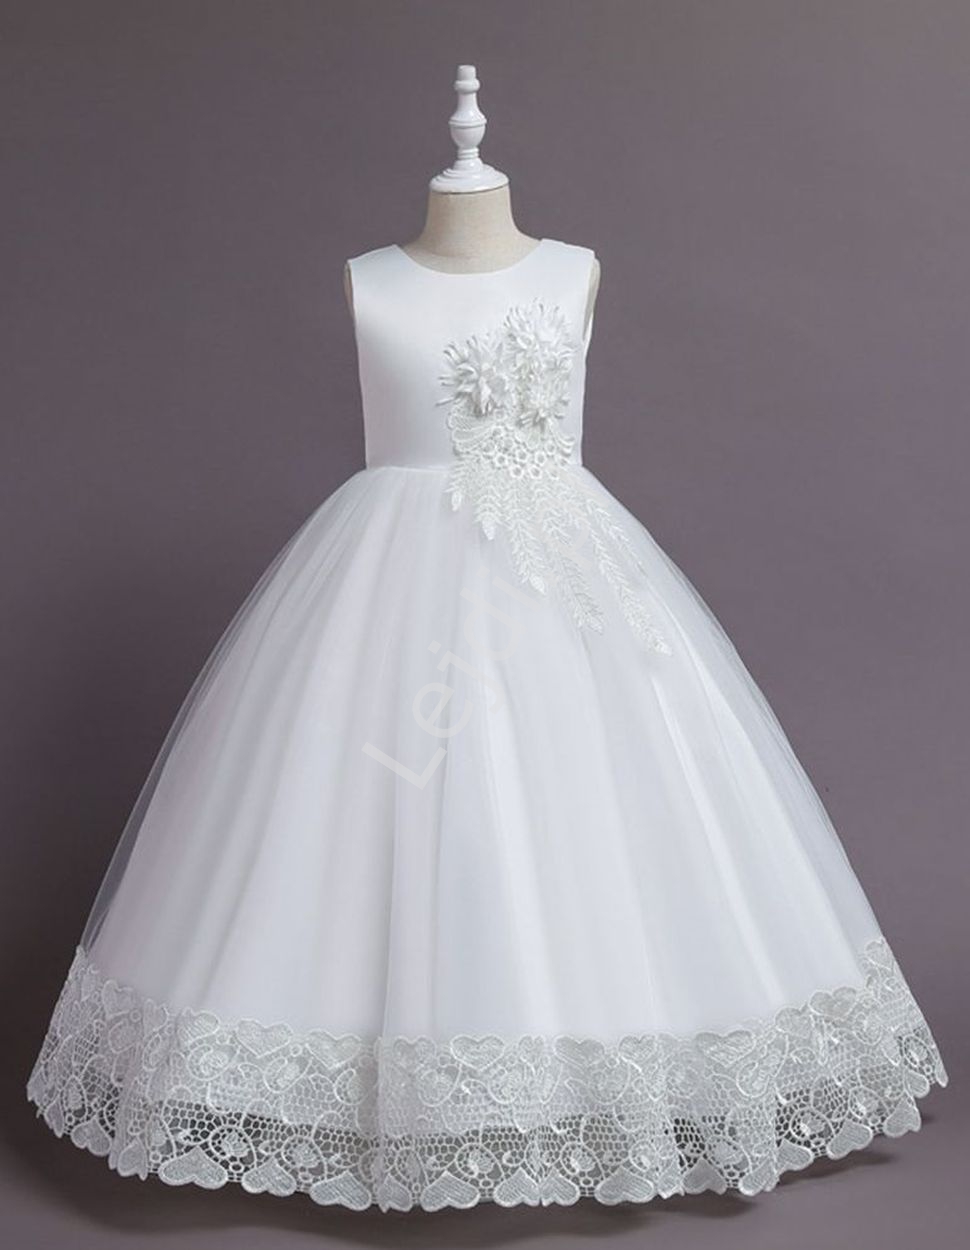 Biała sukienka na komunię, długa sukienka dla dziewczynki R001